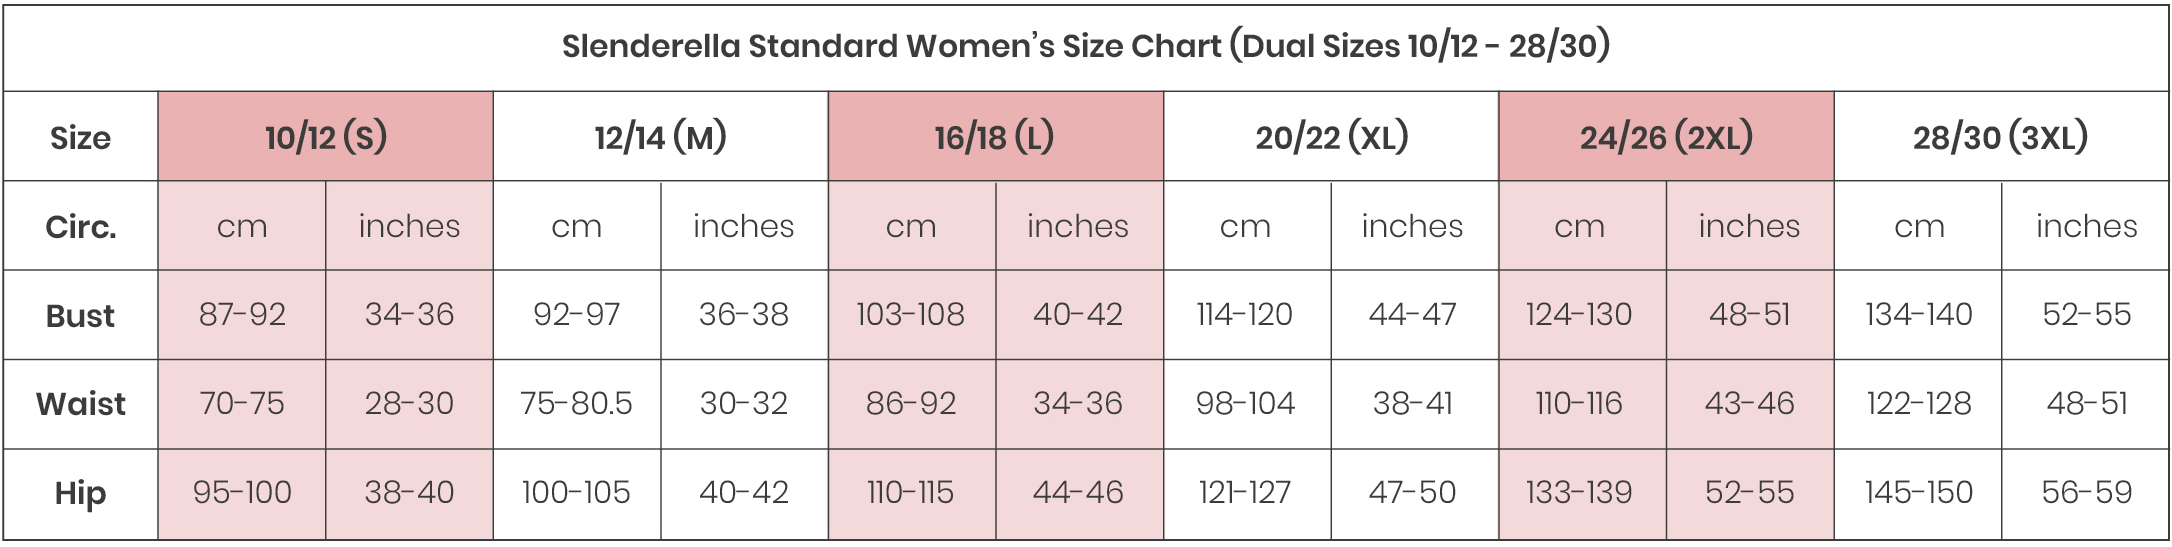 Size Guide, Bra Size Measurement, Size Charts, Nightwear, Bra, Bra